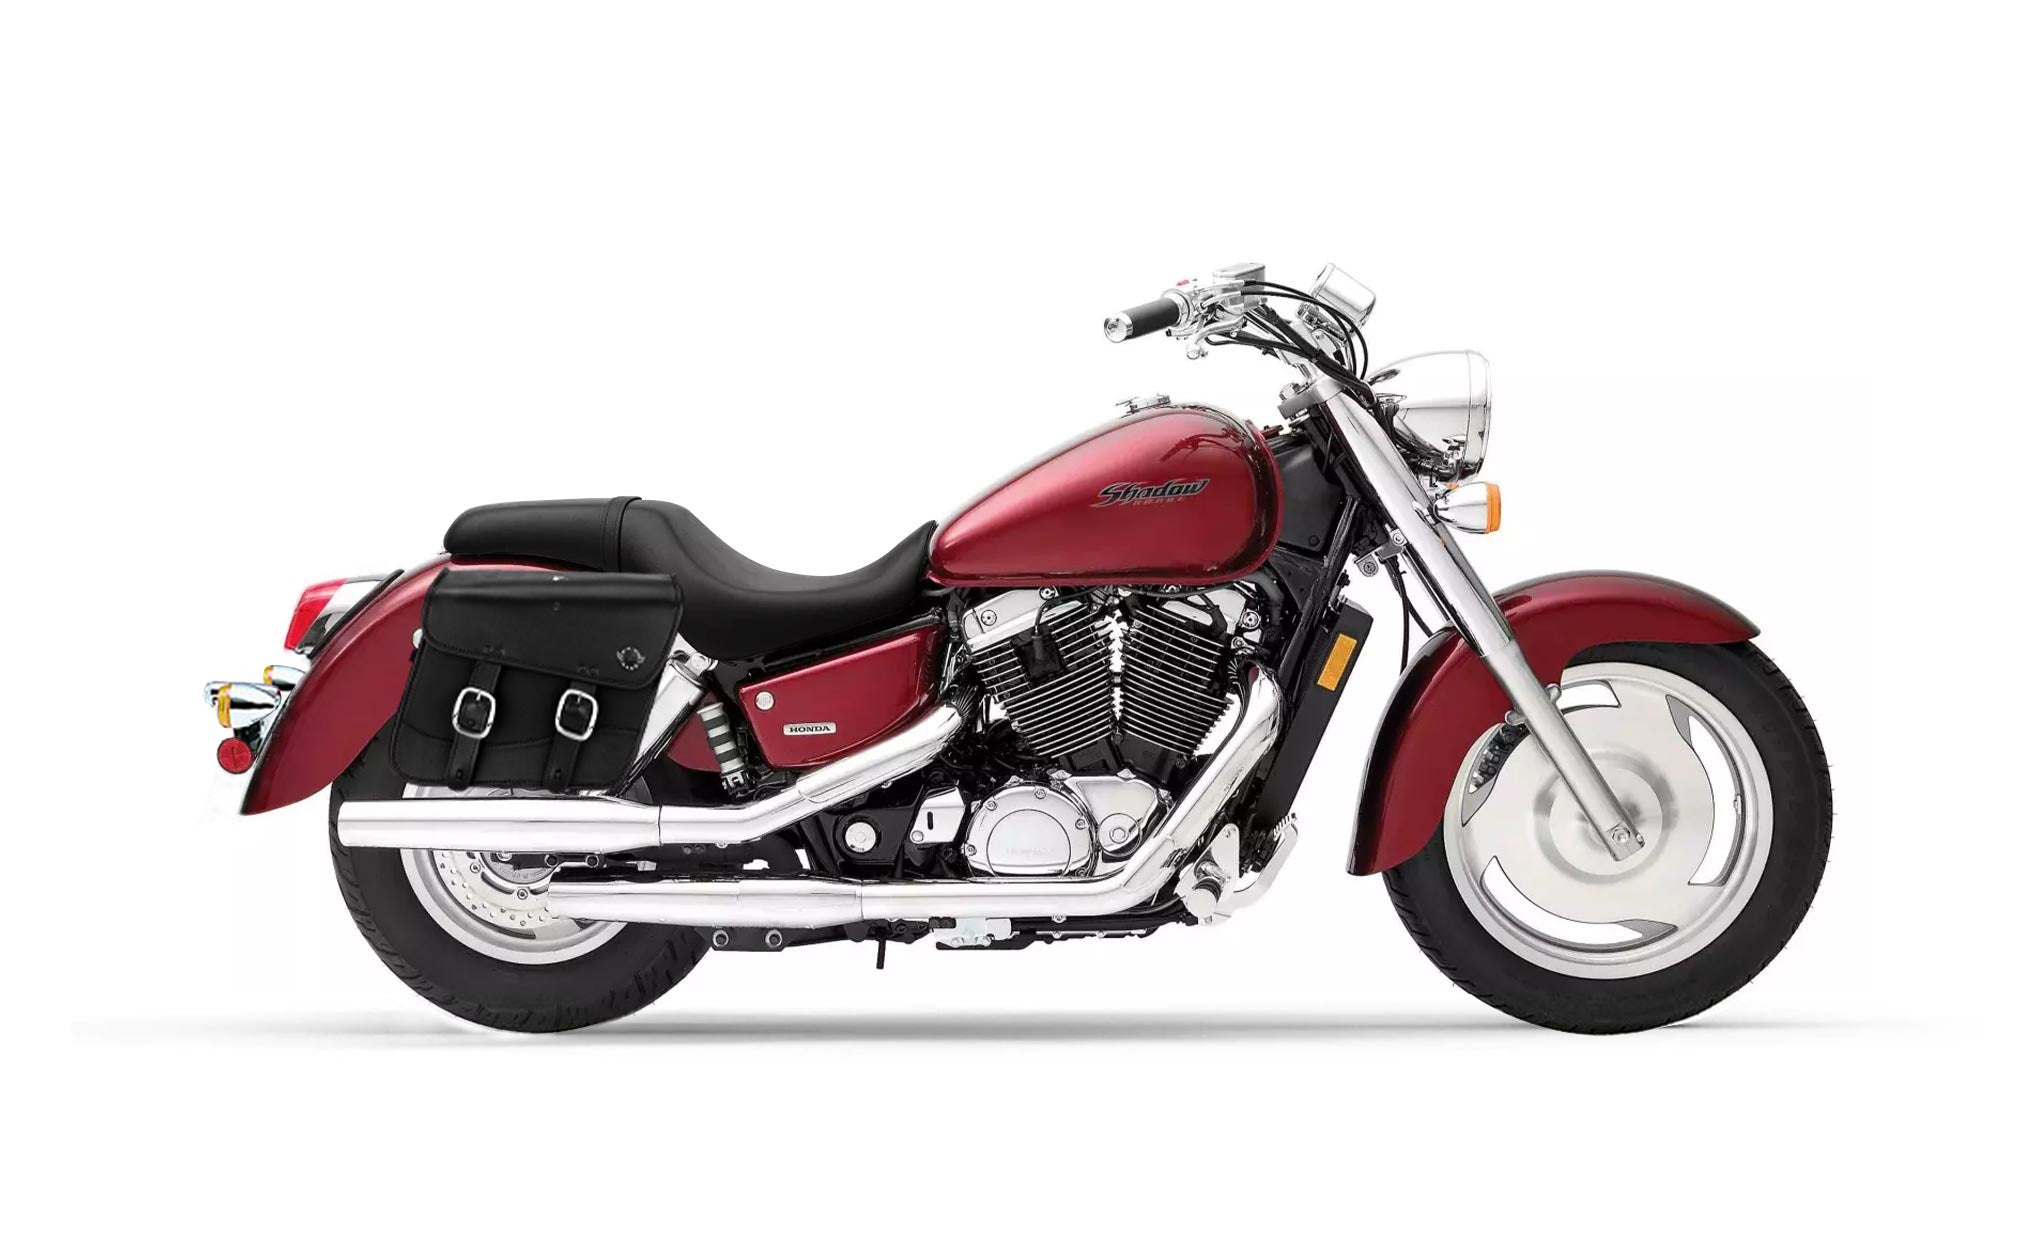 Viking Thor Medium Honda Shadow 1100 Sabre Leather Motorcycle Saddlebags on Bike Photo @expand